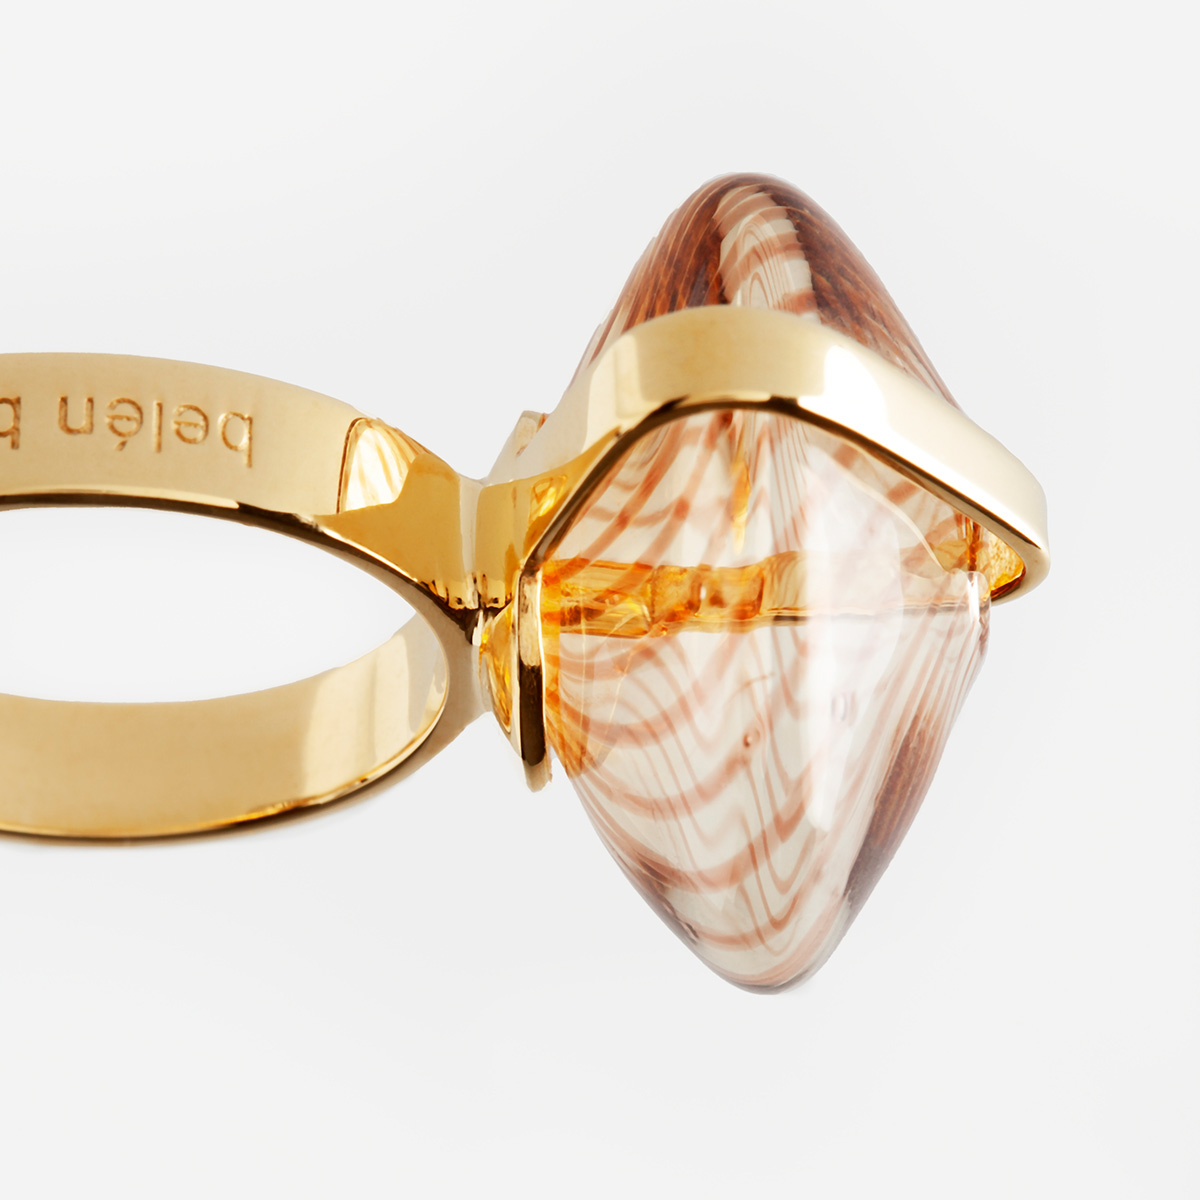 Anillo artesanal Xex en vidrio ambar y plata 925 chapada en oro de 18K diseñado por Belen Bajo